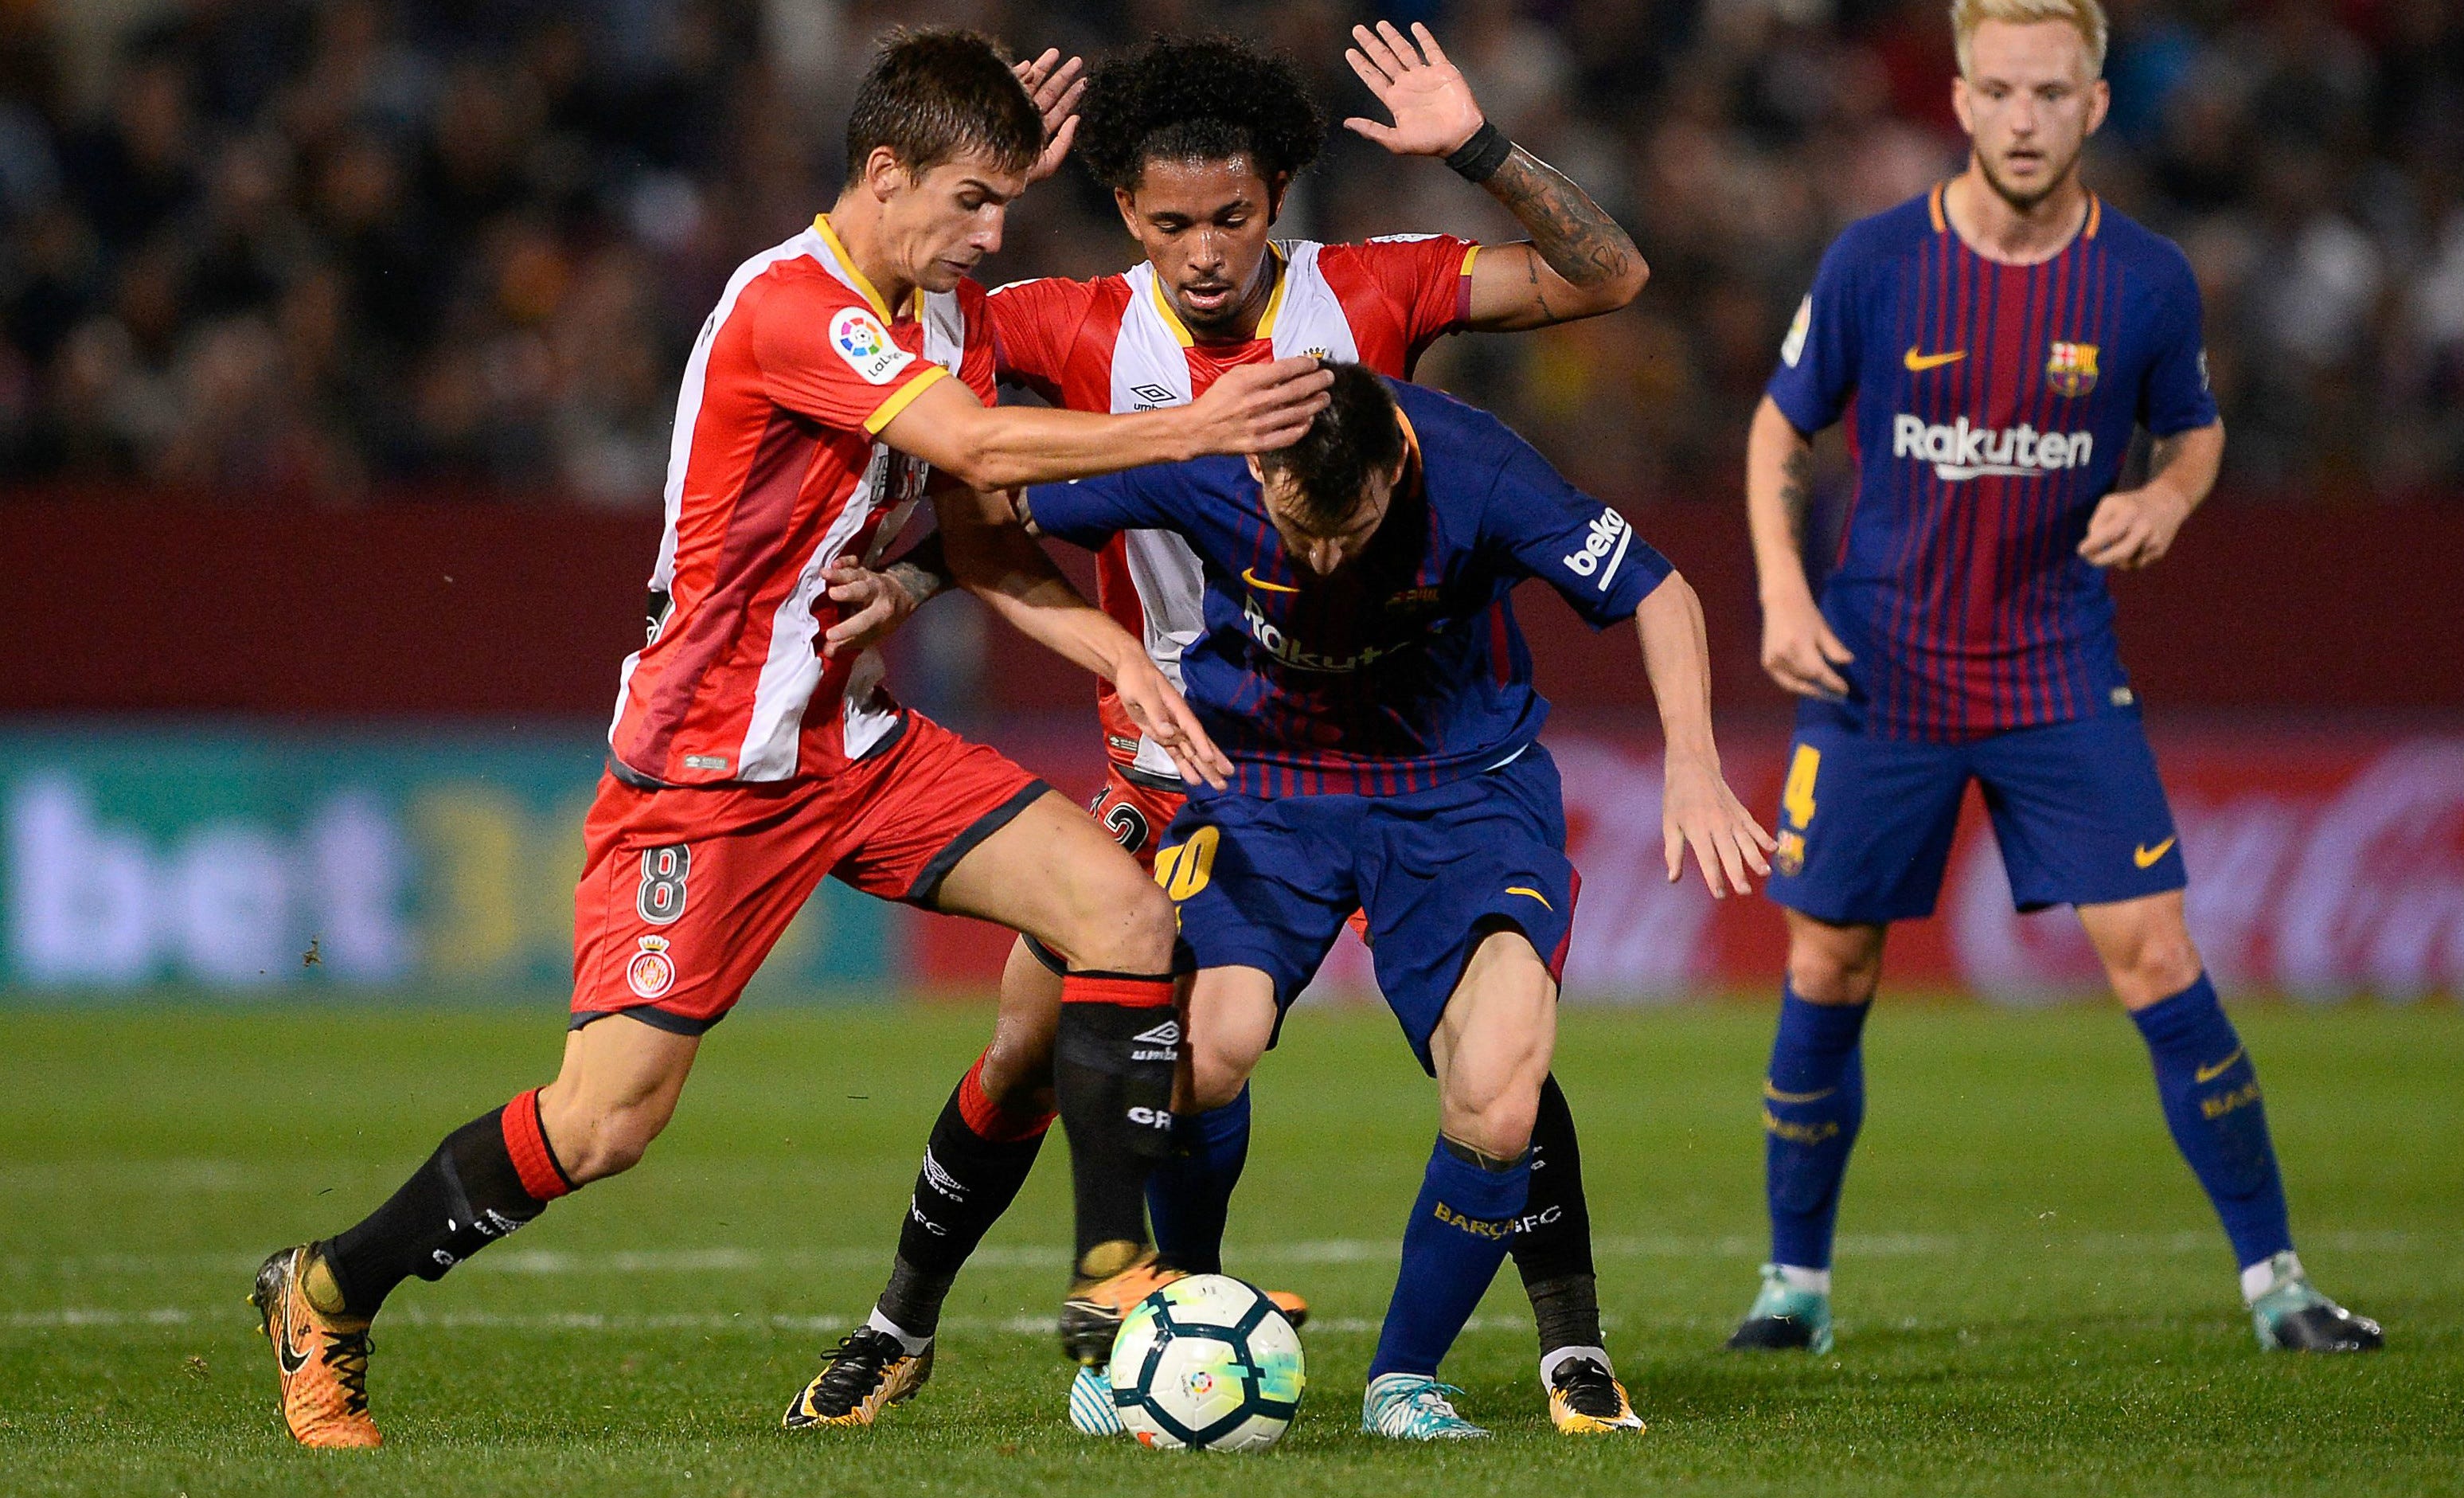 le destinó a Messi una marca personal que siguió a todos lados: les fue? | Goal.com Espana